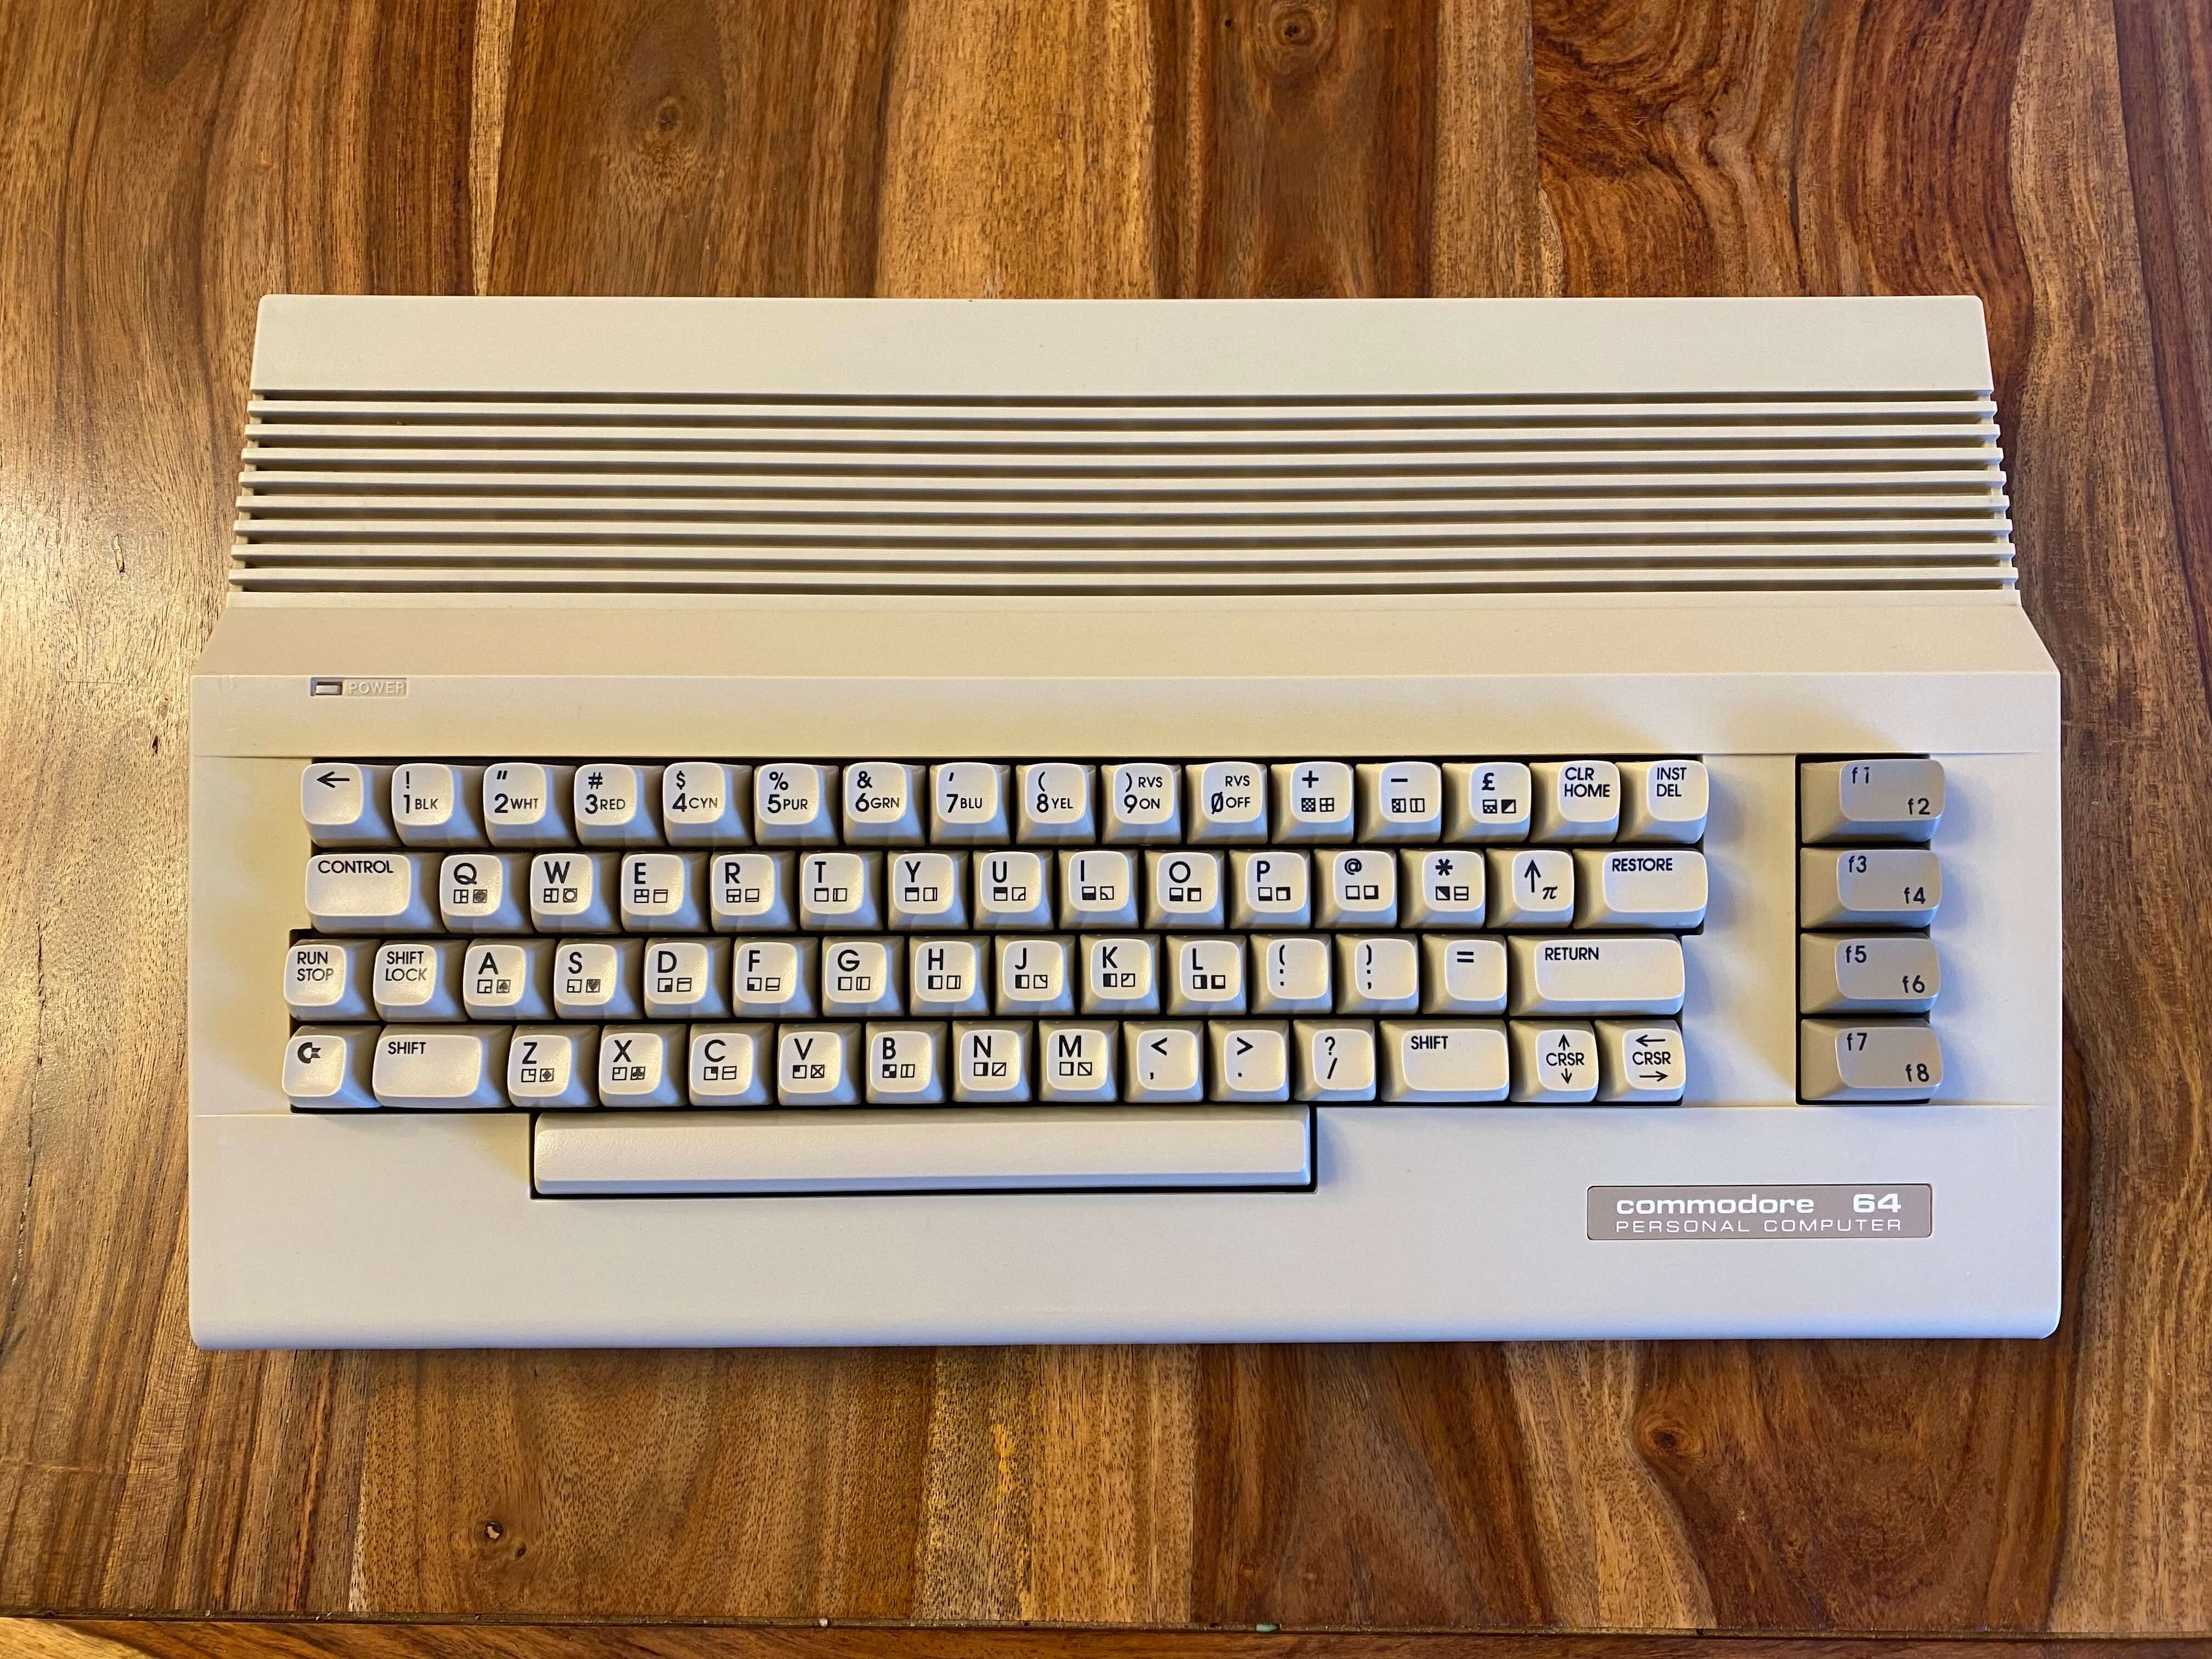 Commodore 64 (closer look)